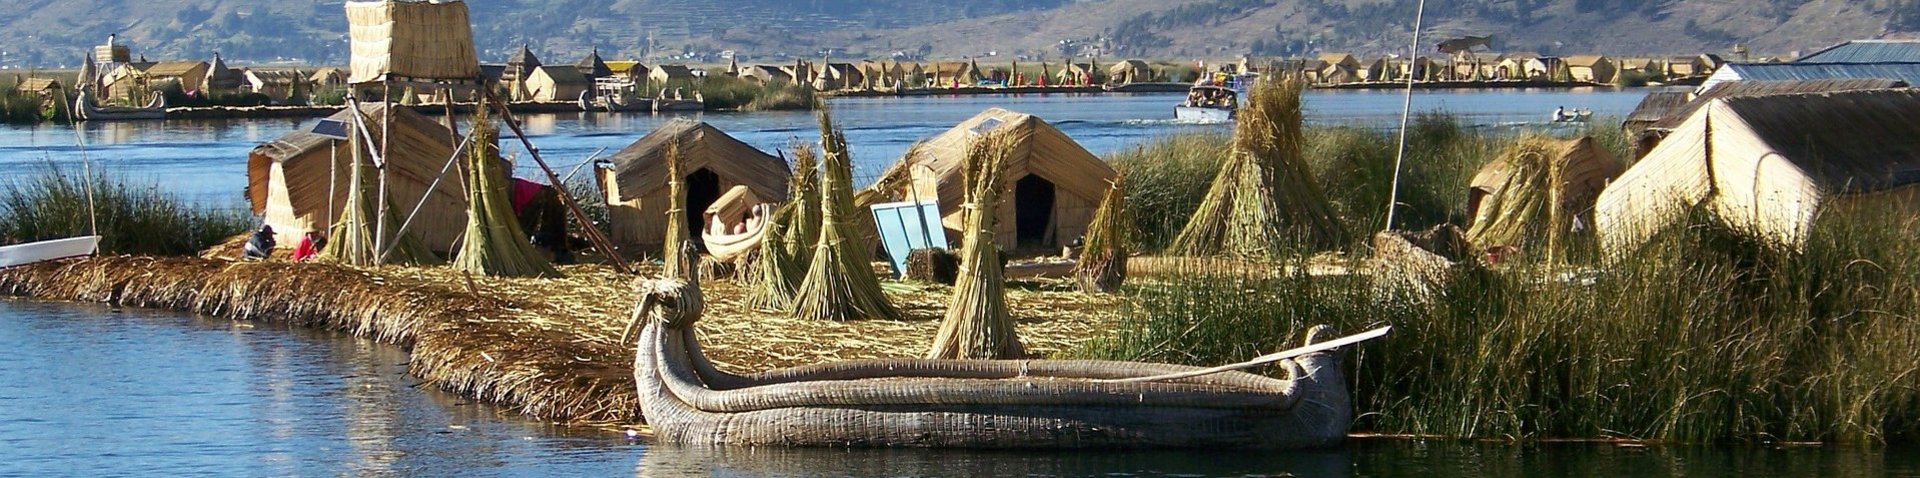 Boot bei den Schilfinseln auf dem Titicacasee